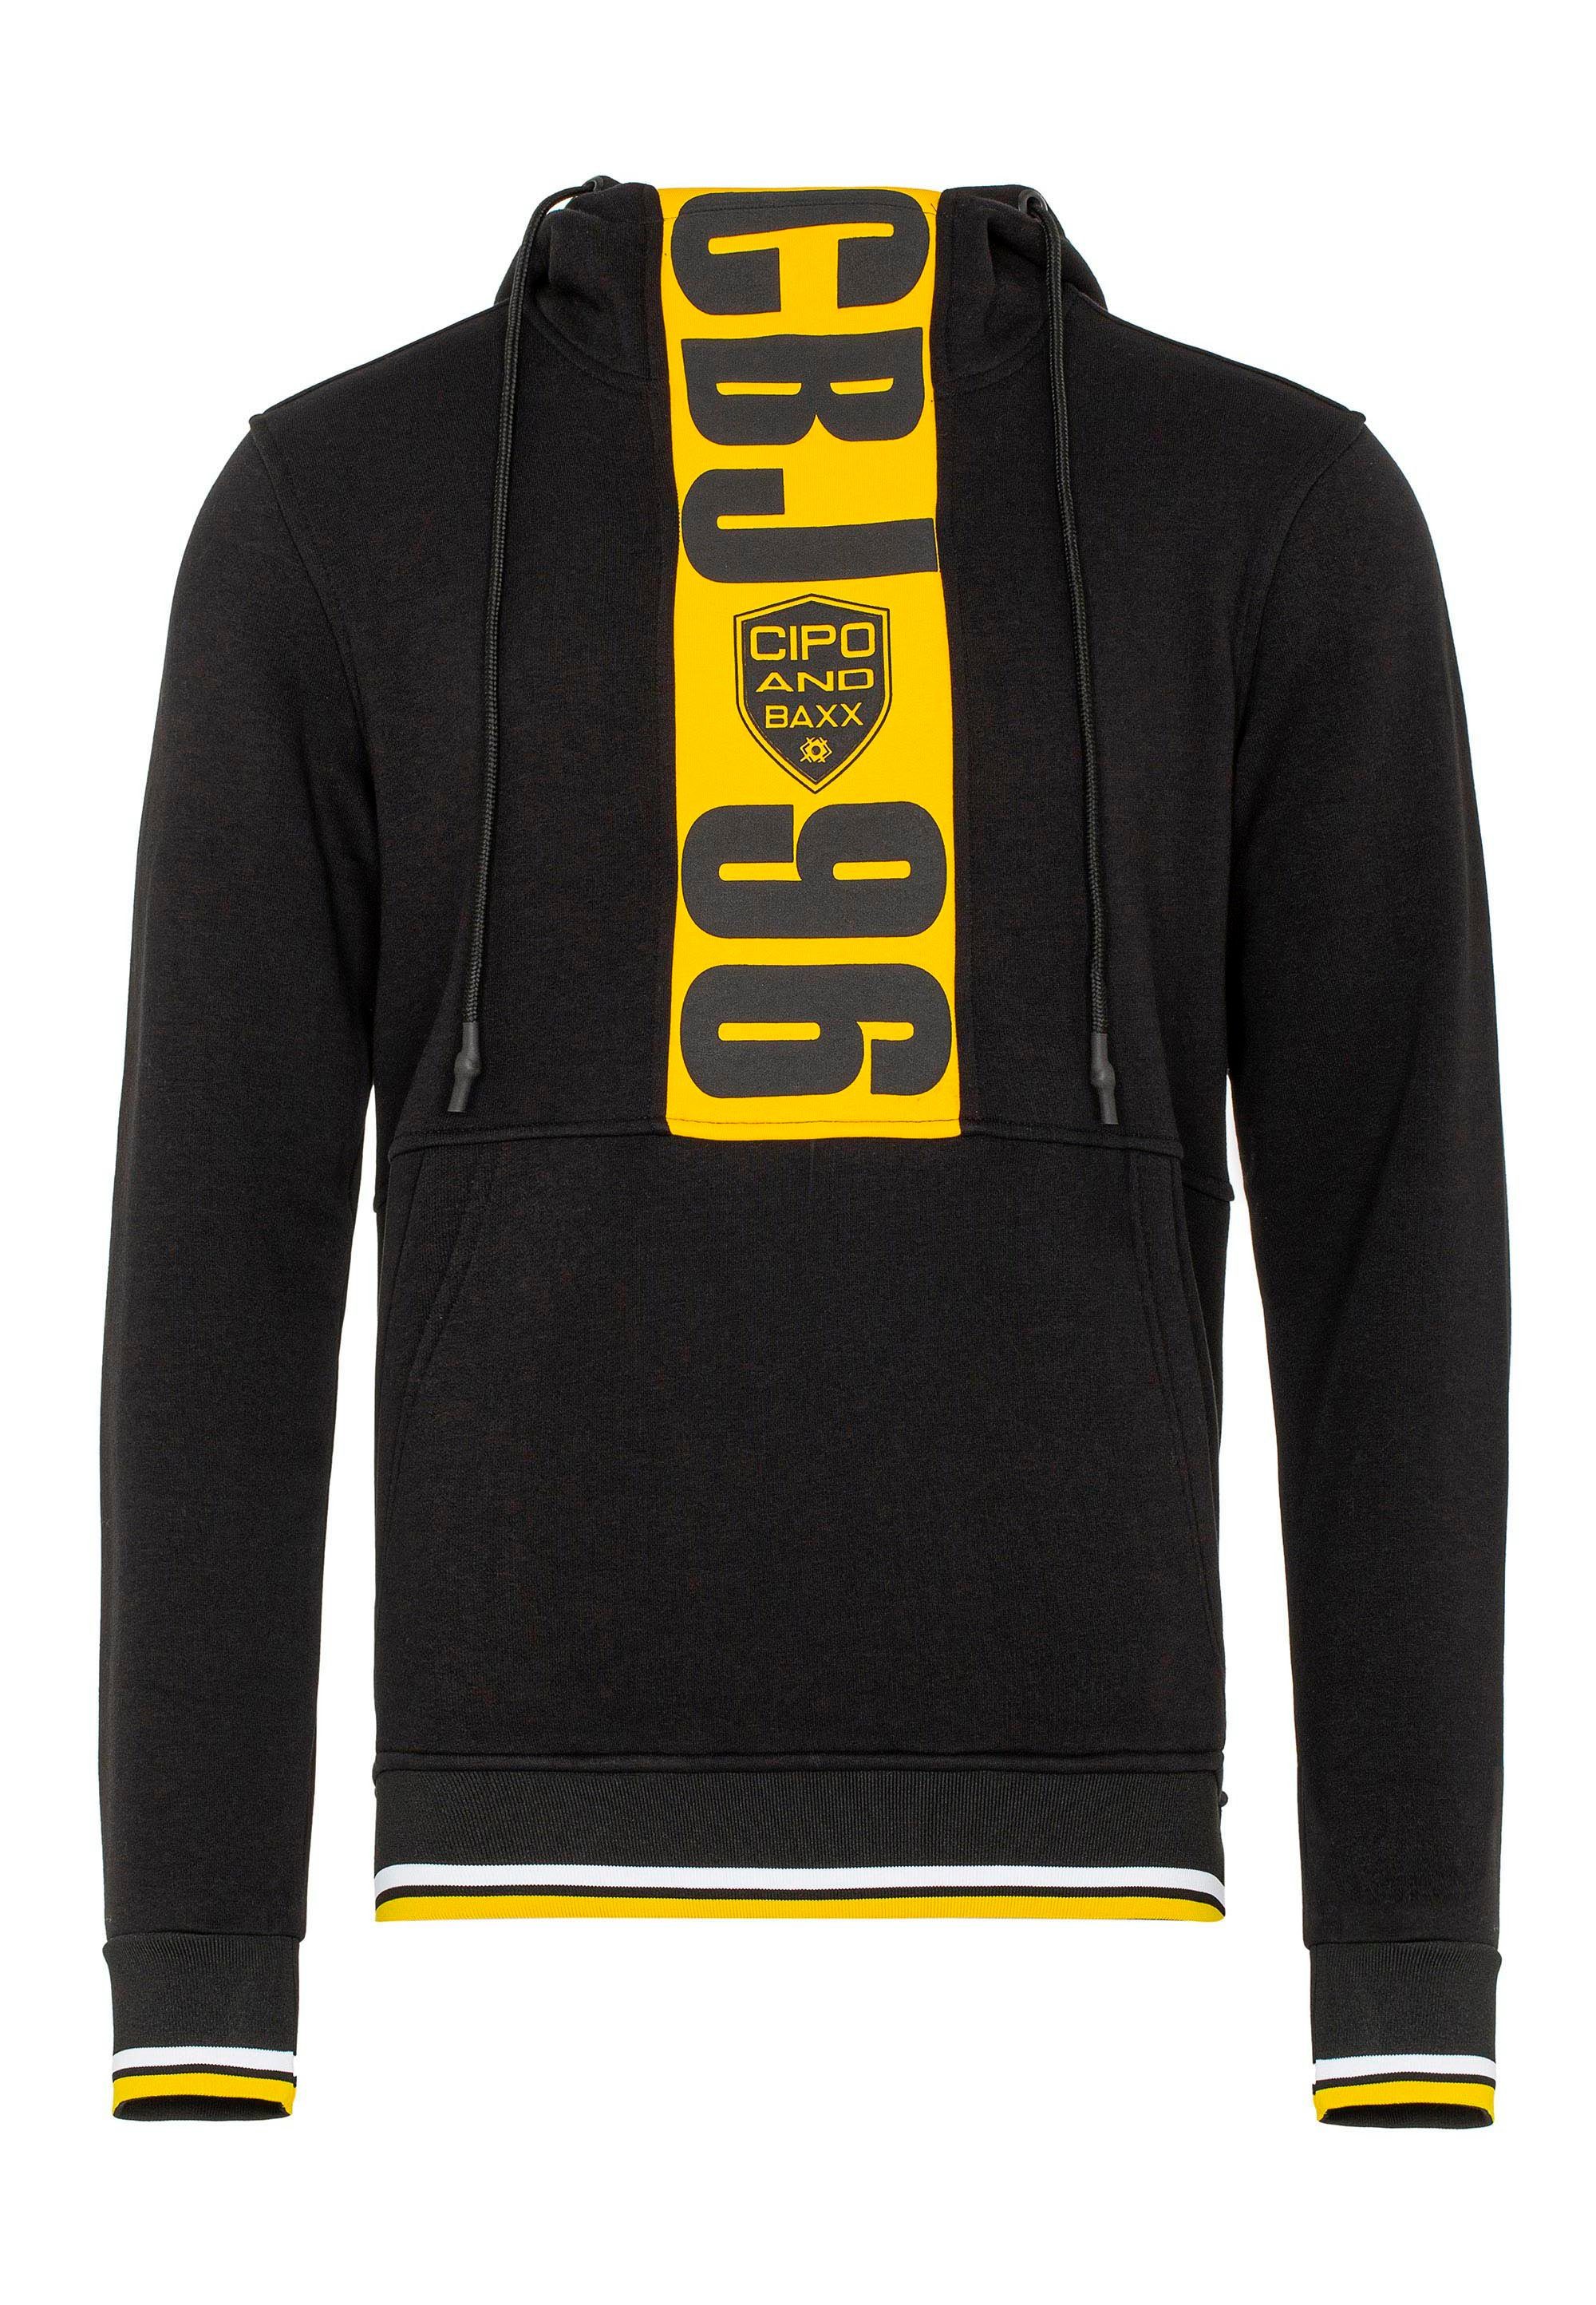 Cipo & Baxx Kapuzensweatshirt tollen Markenprints mit schwarz